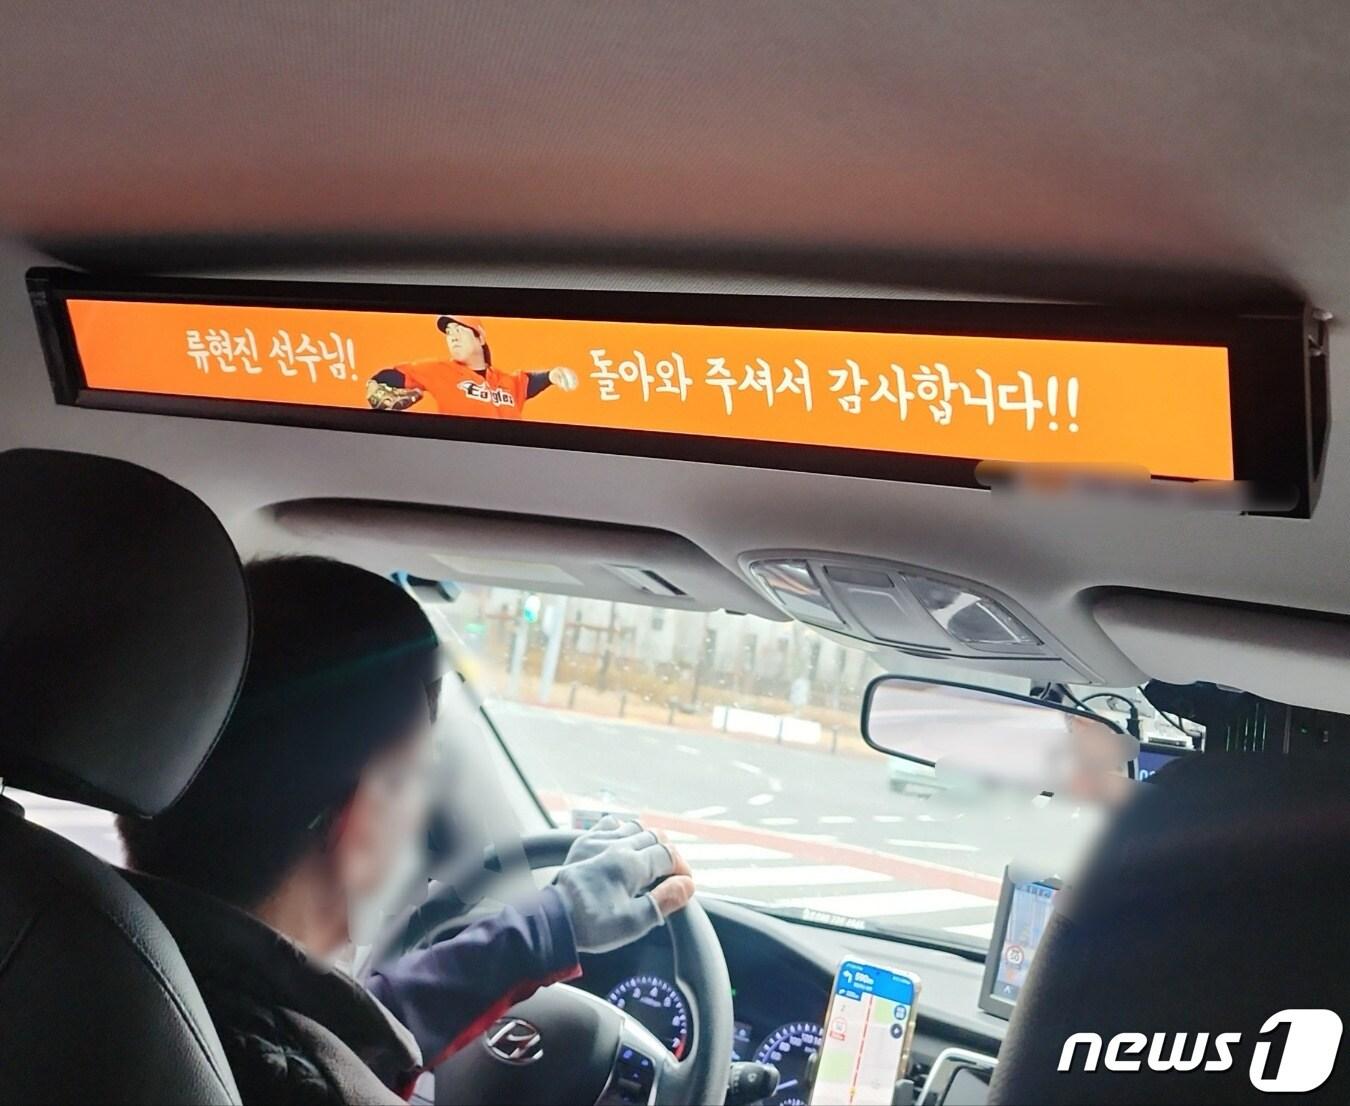 22일 류현진이 친정팀인 한화 이글스로 복귀하자 대전 시내 택시에는 그를 환영하는 배너가 등장했다&#40;독자제공&#41;.